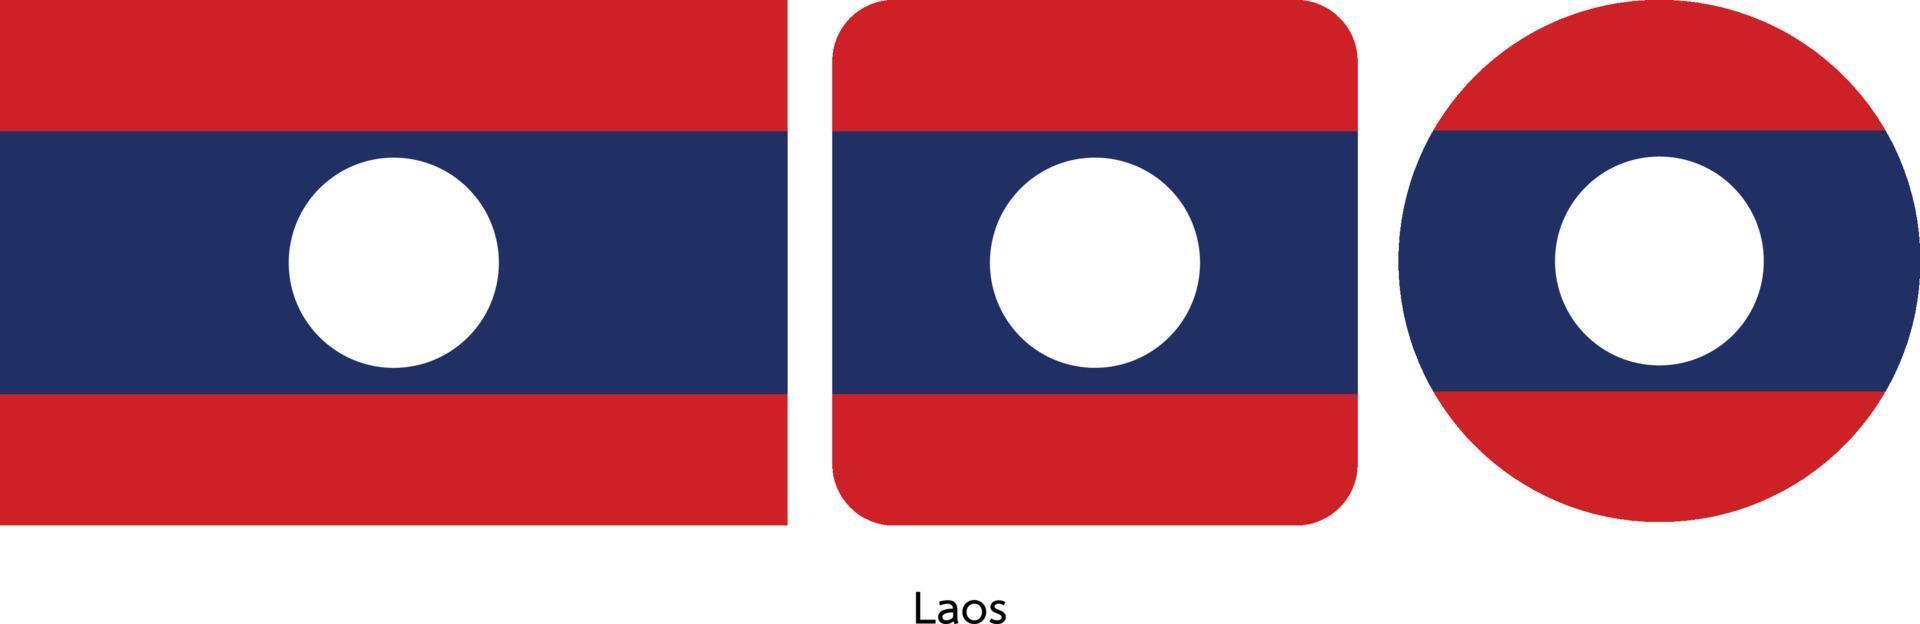 bandiera del laos, illustrazione vettoriale